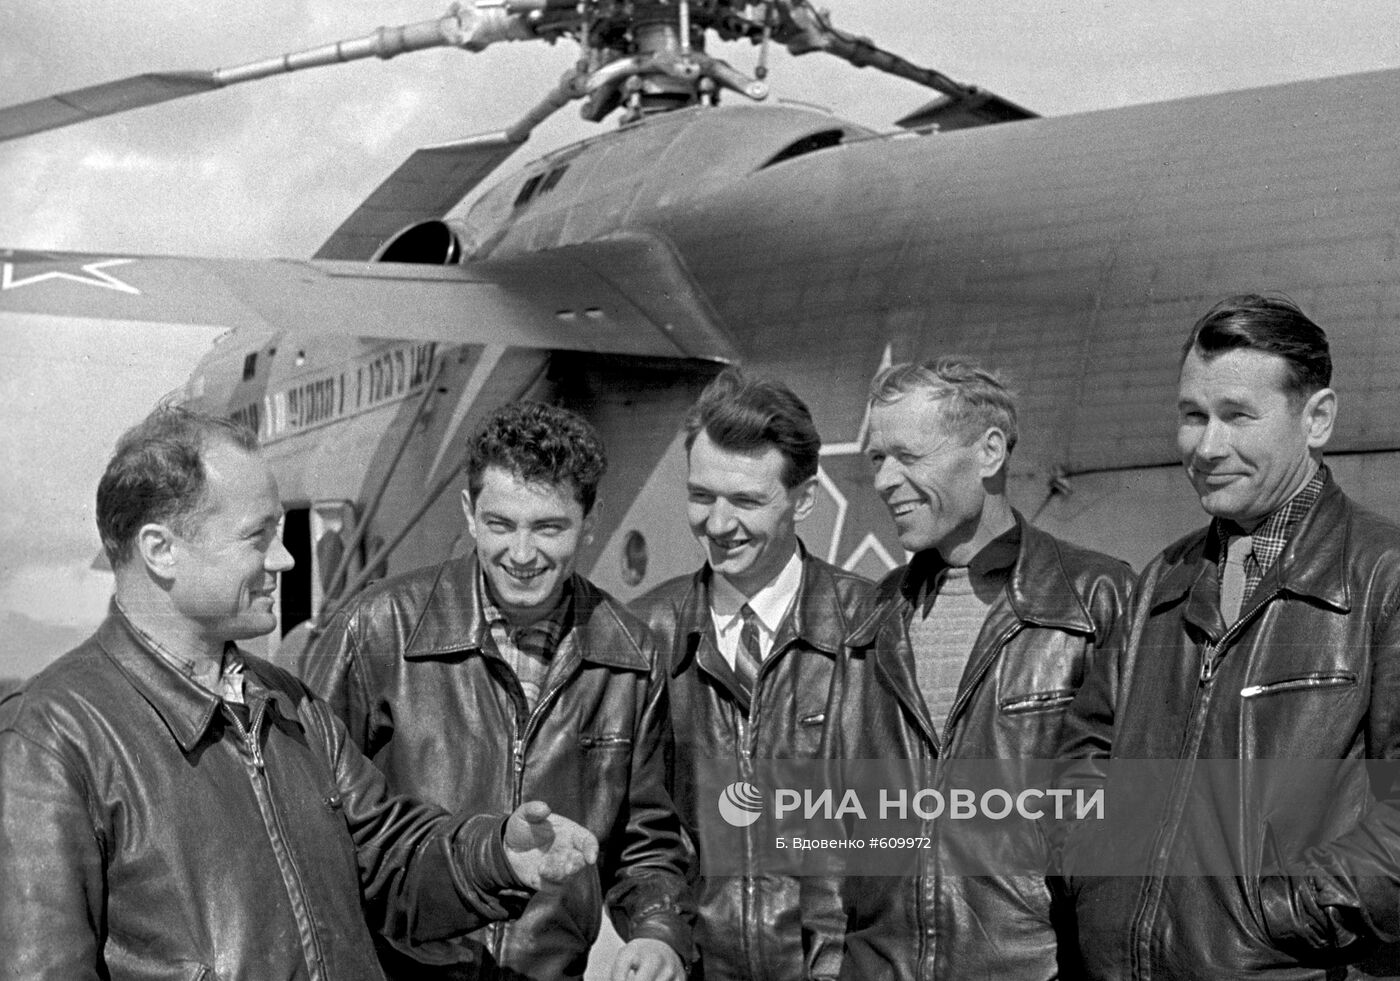 Члены экипажа вертолета Ми-6, установившие мировые рекорды